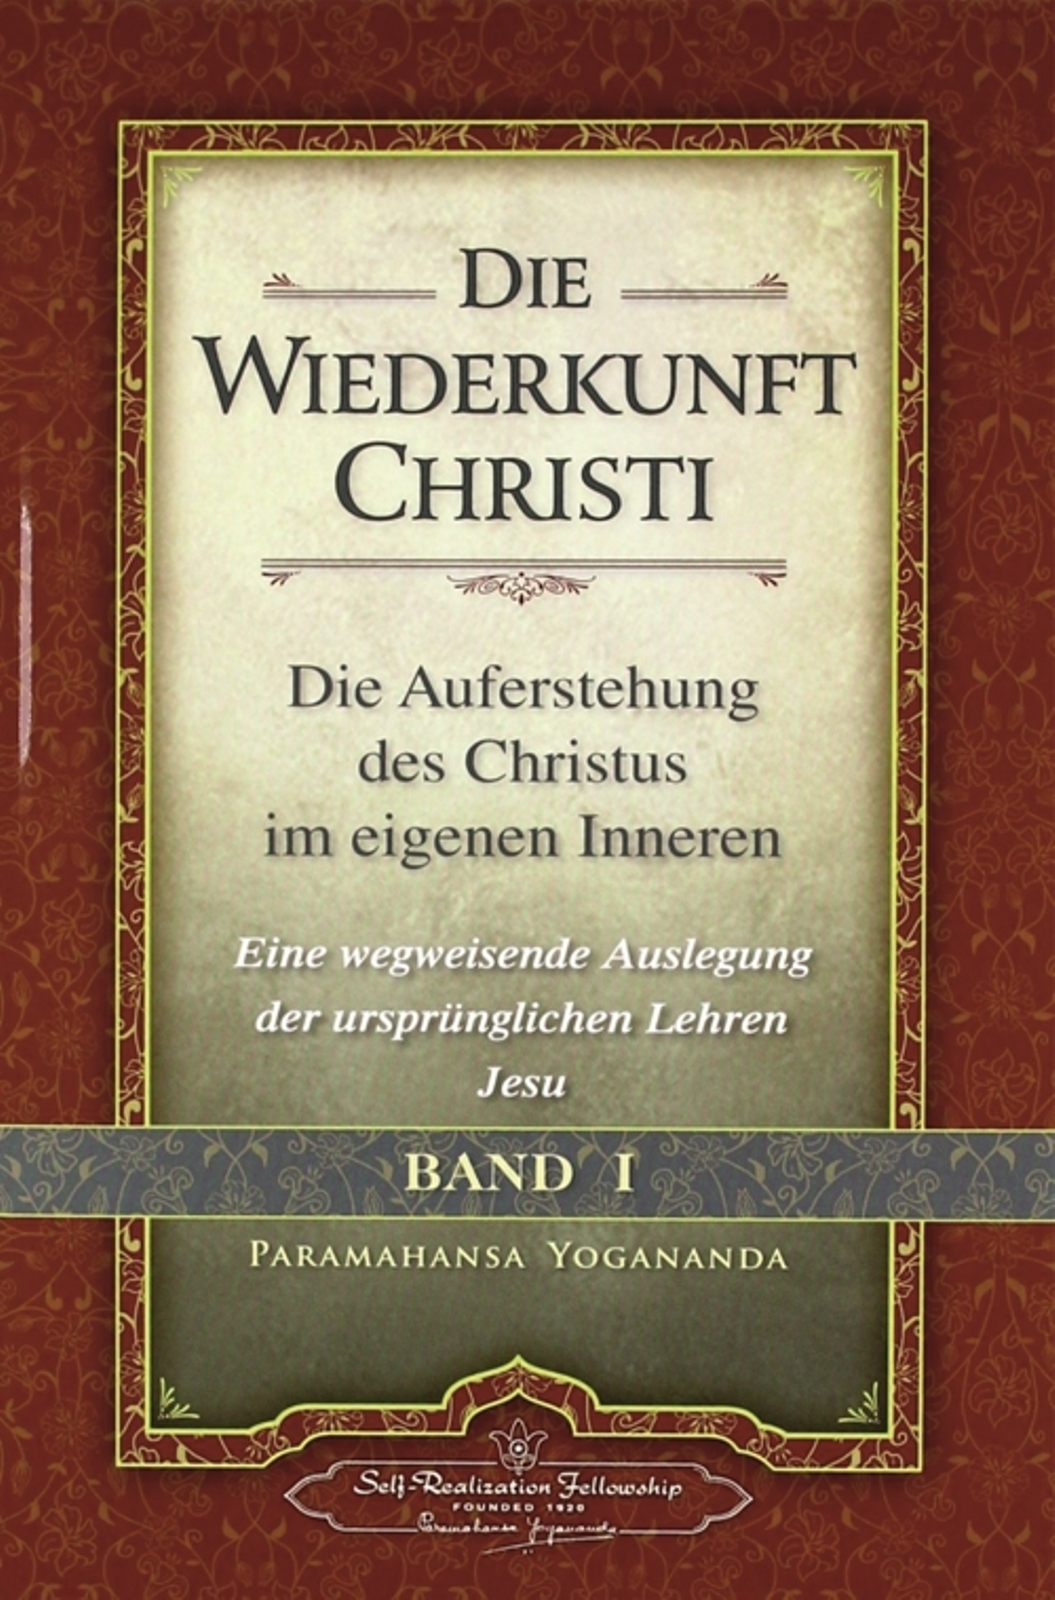 Die Wiederkunft Christi, Paramahansa Yogananda, Bd. 1